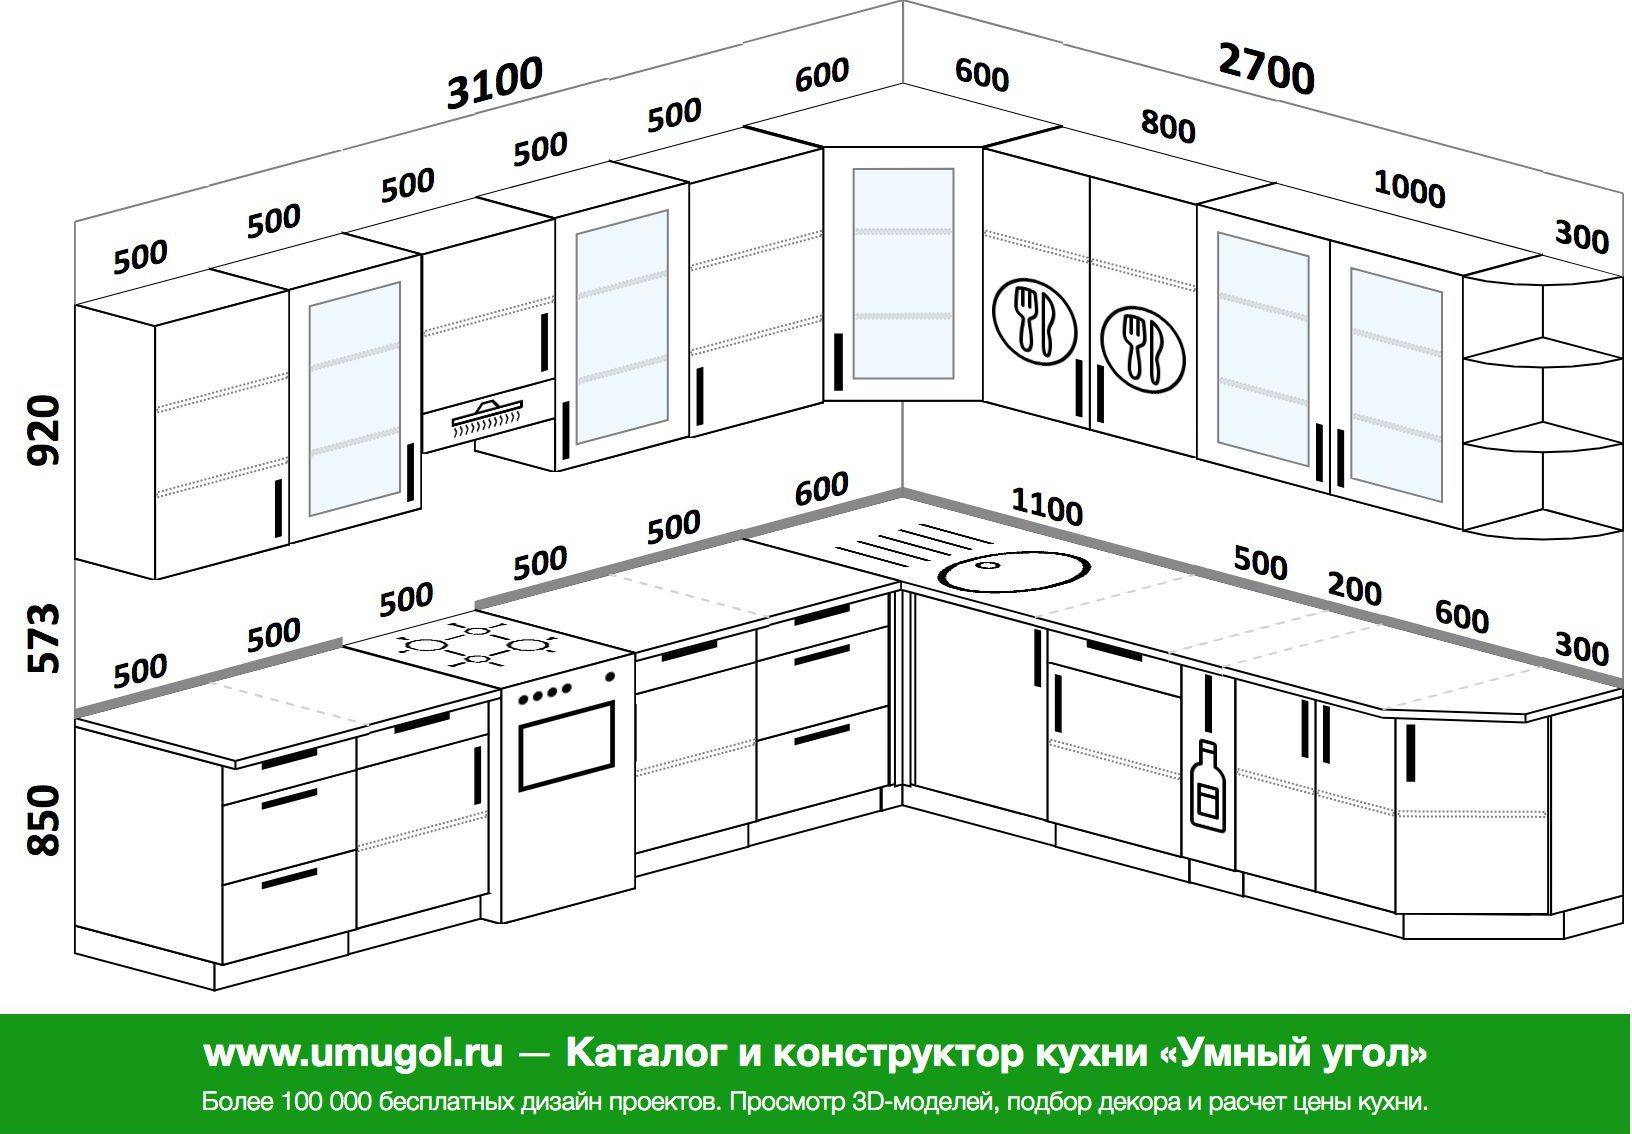 Стандартная высота стола кухонного гарнитура